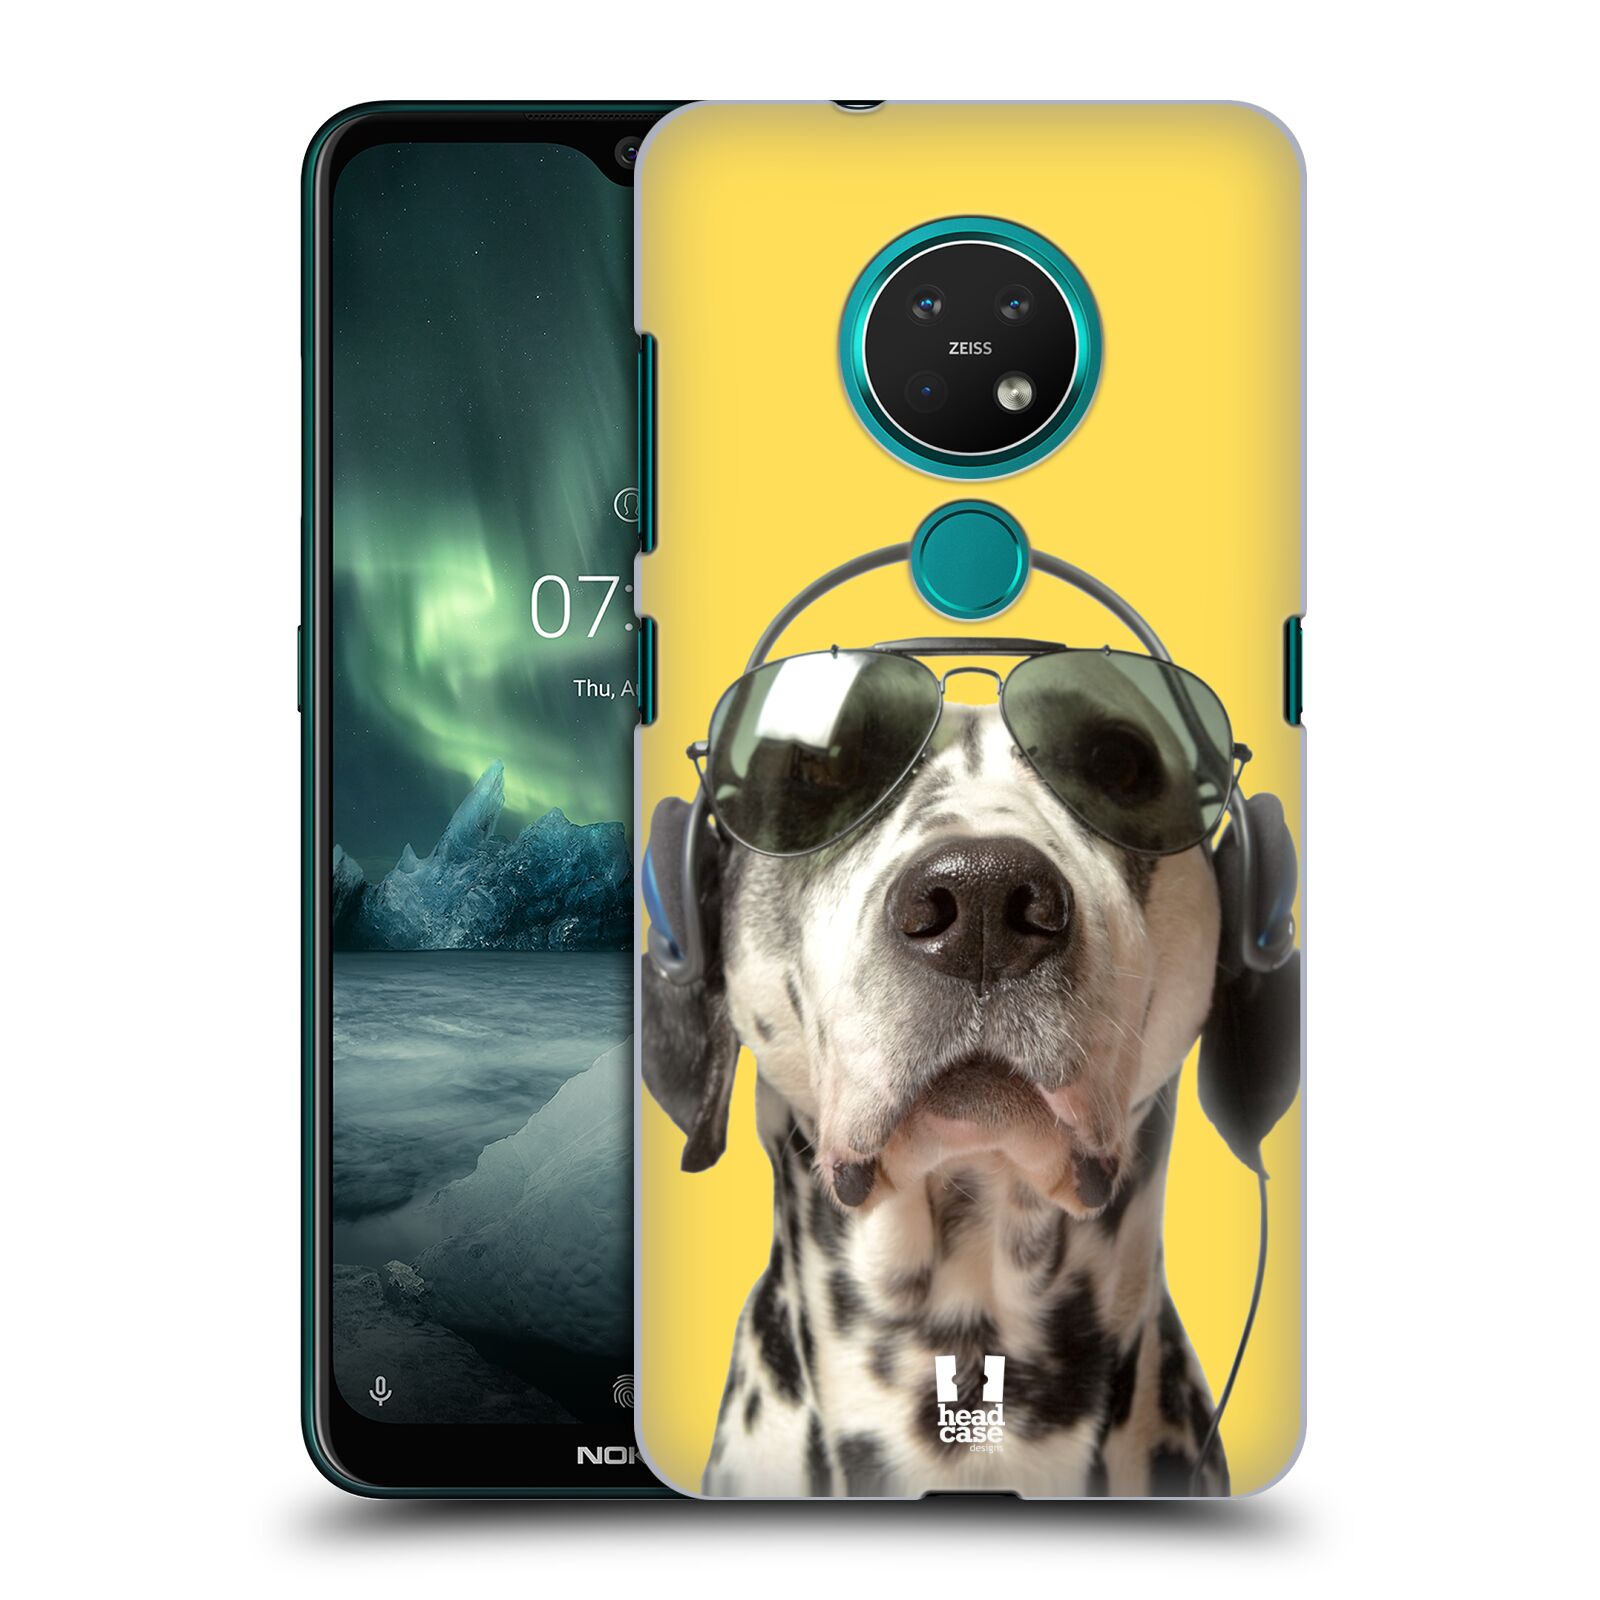 Pouzdro na mobil NOKIA 7.2 - HEAD CASE - vzor Legrační zvířátka dalmatin se sluchátky žlutá